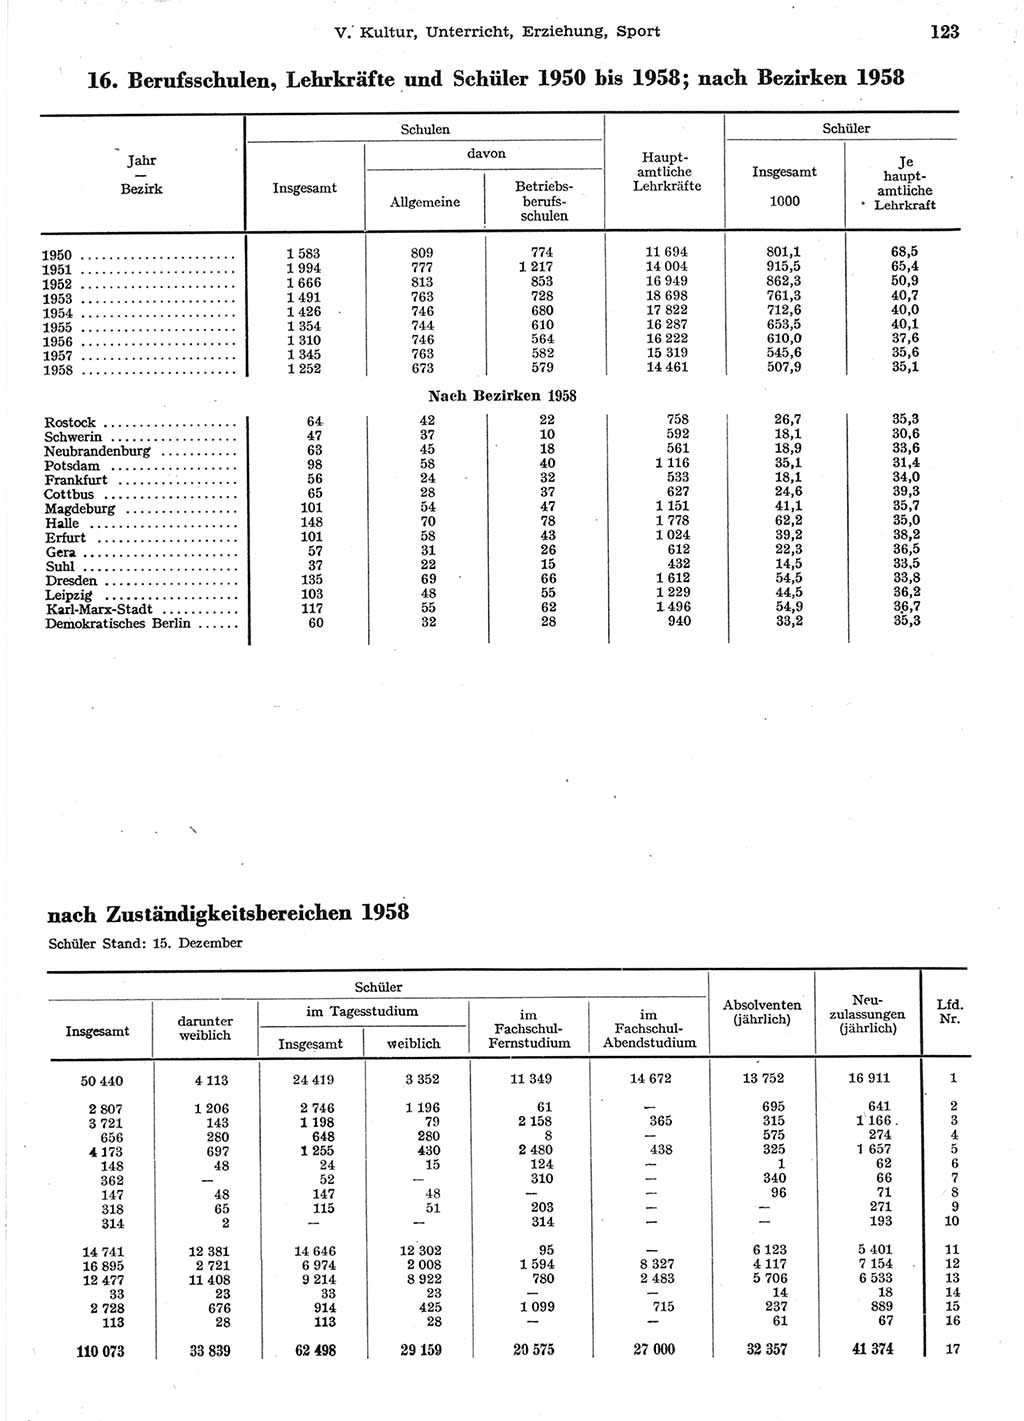 Statistisches Jahrbuch der Deutschen Demokratischen Republik (DDR) 1958, Seite 123 (Stat. Jb. DDR 1958, S. 123)